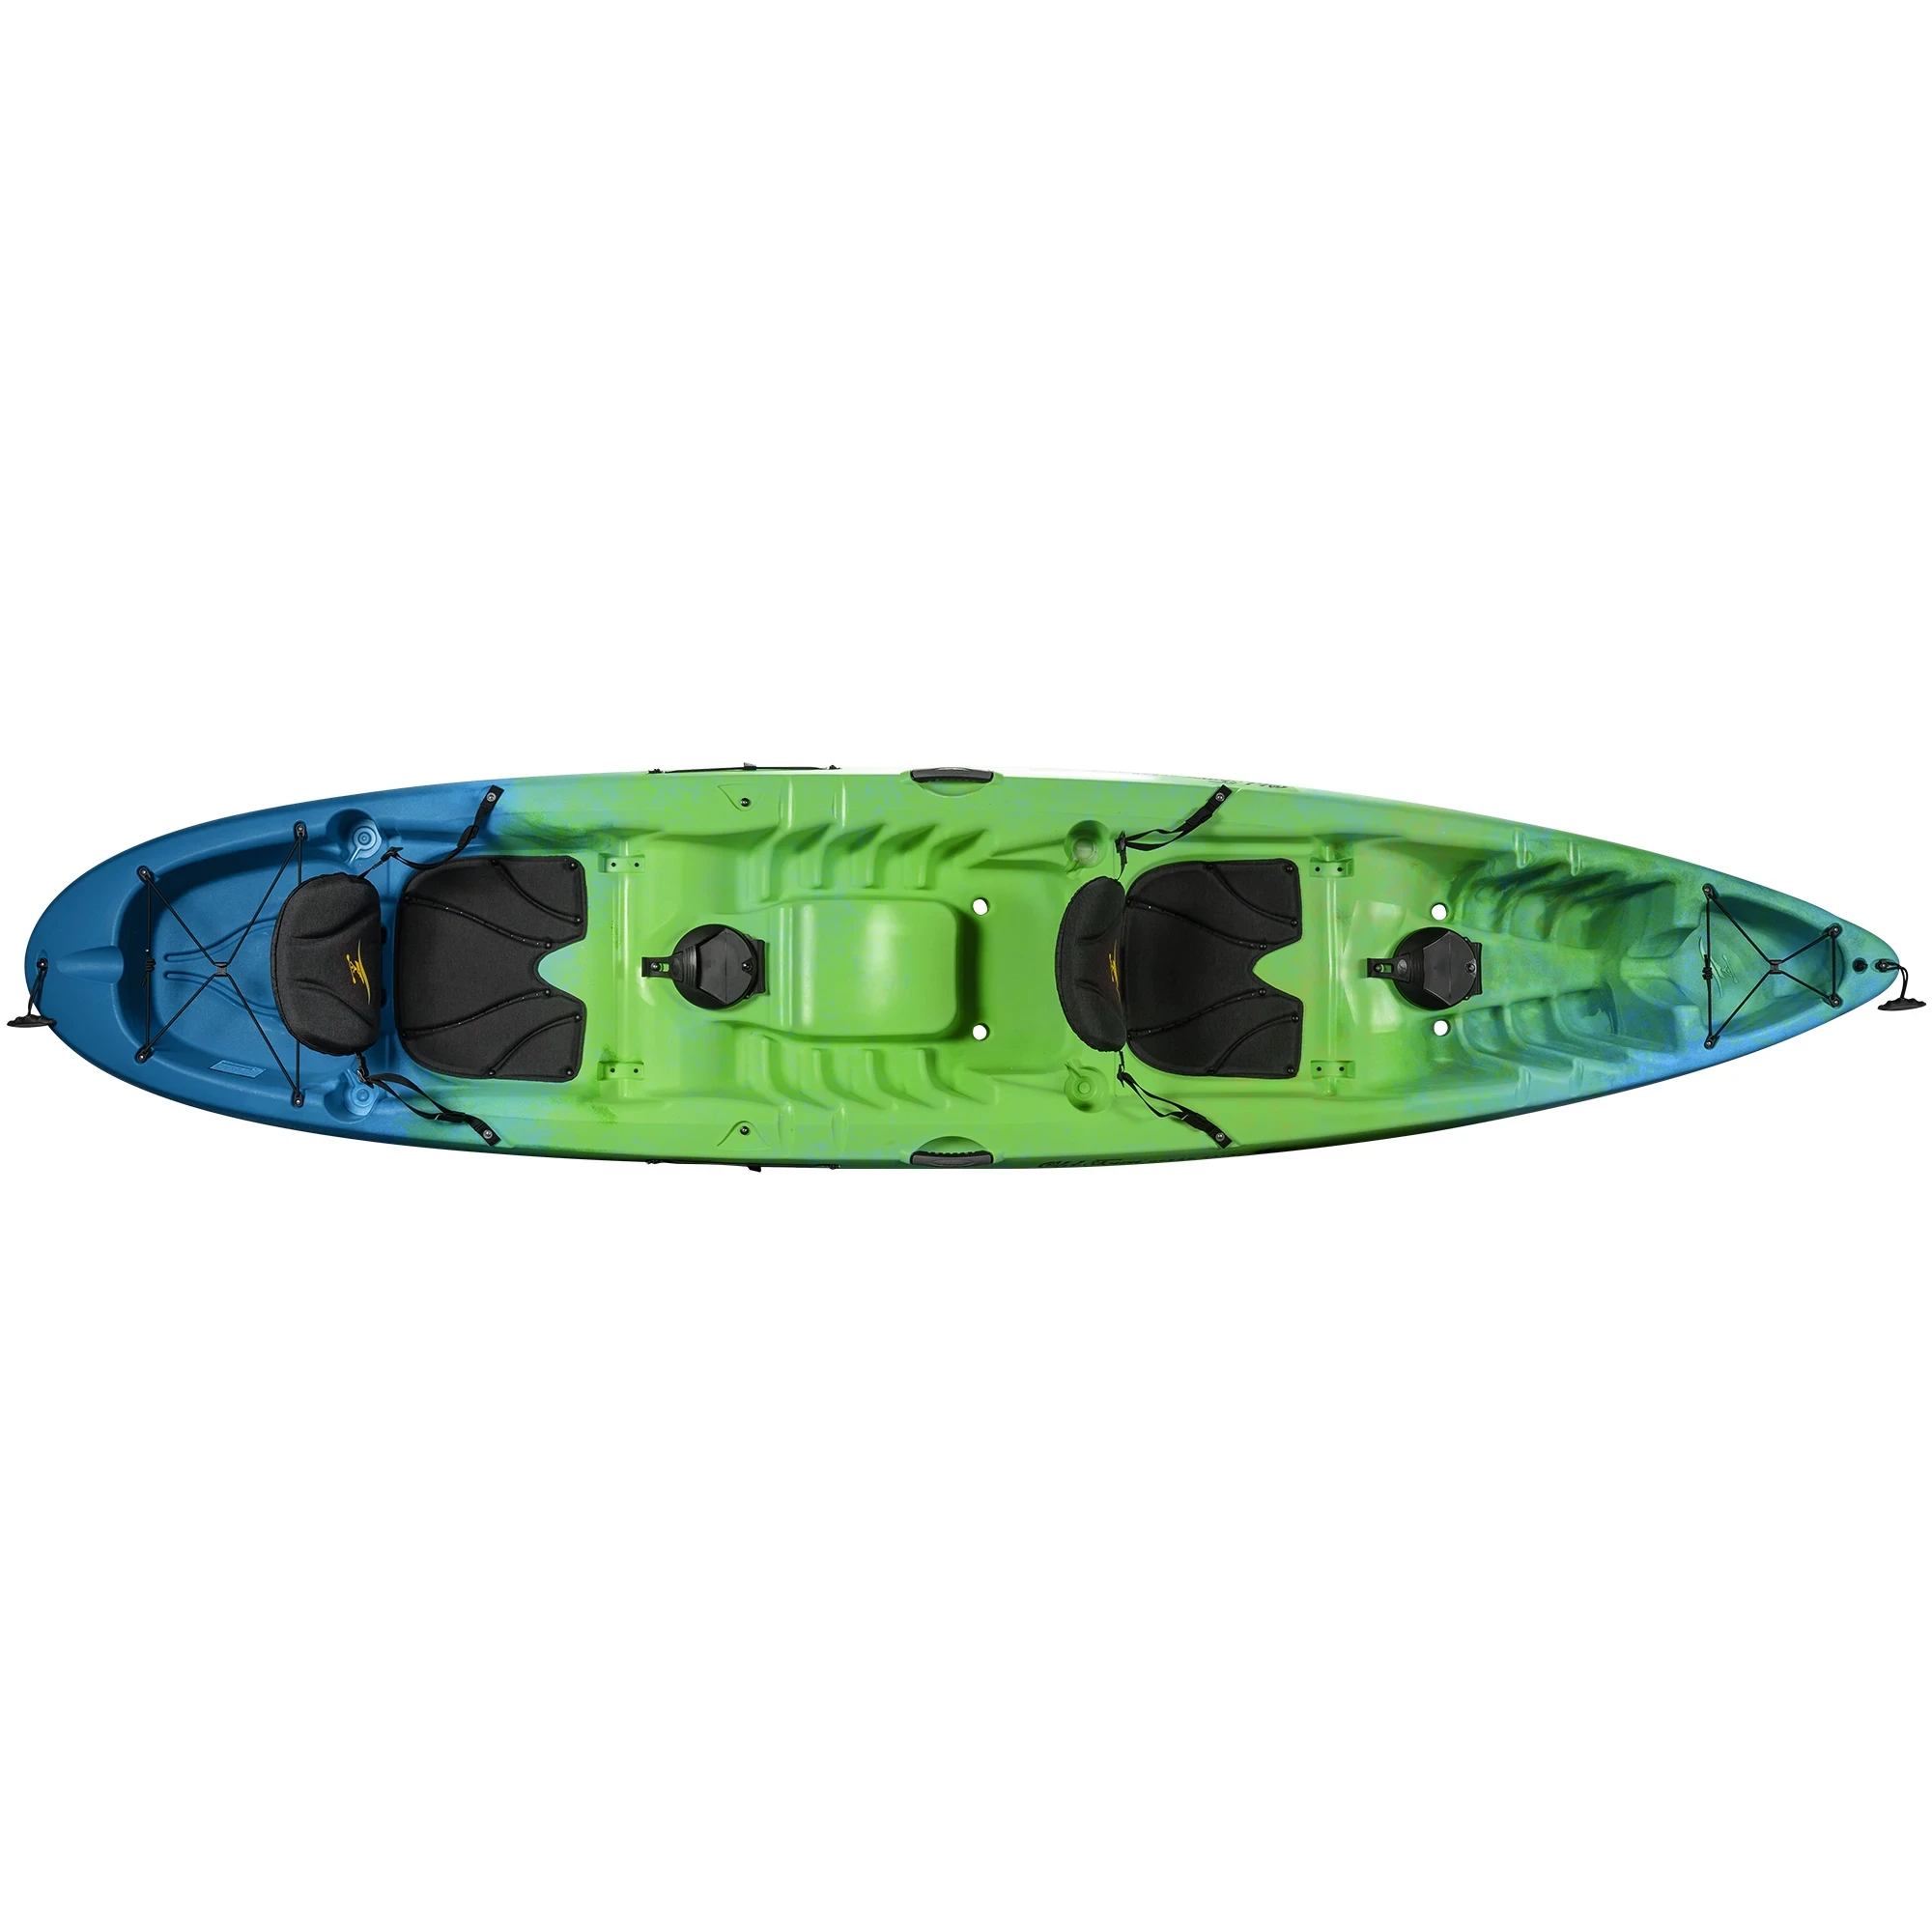 Ocean Kayak Malibu Two XL - Ahi - Top View